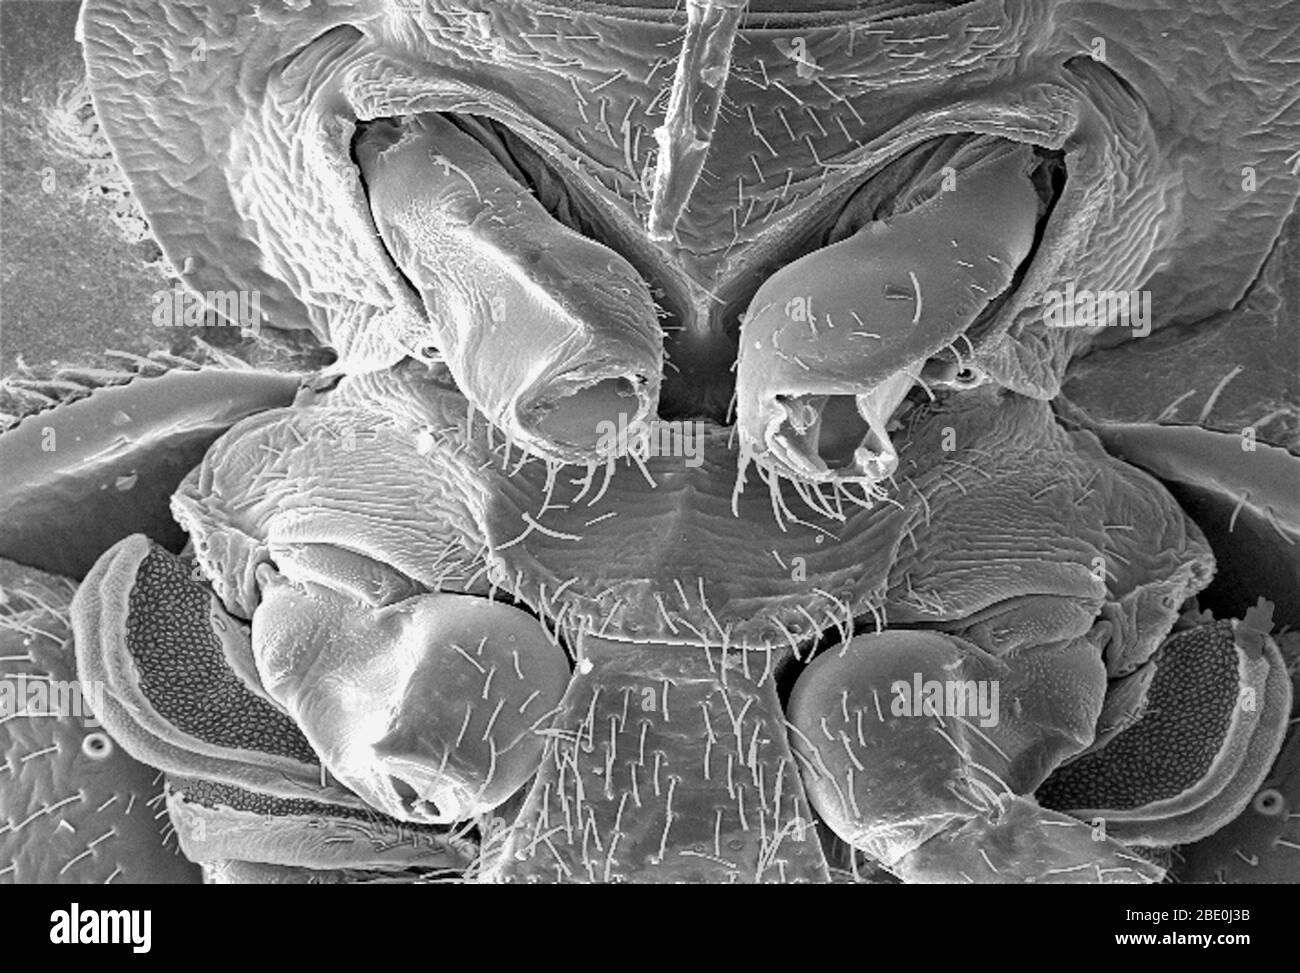 Der Rasterelektronenmikrograph (SEM) zeigte einige der ultrastrukturellen Morphologie, die auf der ventralen Oberfläche eines Bettwanzens, Cimex lectularius, dargestellt ist. Von dieser Ansicht aus können Sie oben die Mundstücke sehen, die das Insekt zum Durchstechen seiner Blutmahlzeit verwendet, sowie eine Reihe seiner sechs Gliederbeine. Sie werden auch eine schöne durchscheinende Struktur am unteren Rand des Bildes bemerken. Es wird spekuliert, dass dieses wundersame ultrastrukturelle Organ höchstwahrscheinlich eine Duftdrüse ist, oder mit der Verbreitung von Duft verbunden ist, der in der Natur pheromonal sein kann. Eine weitere Abschnittsverschnittsverschnittsverschnittsverschnittsverschnittsverschnittsverschnittsver Stockfoto